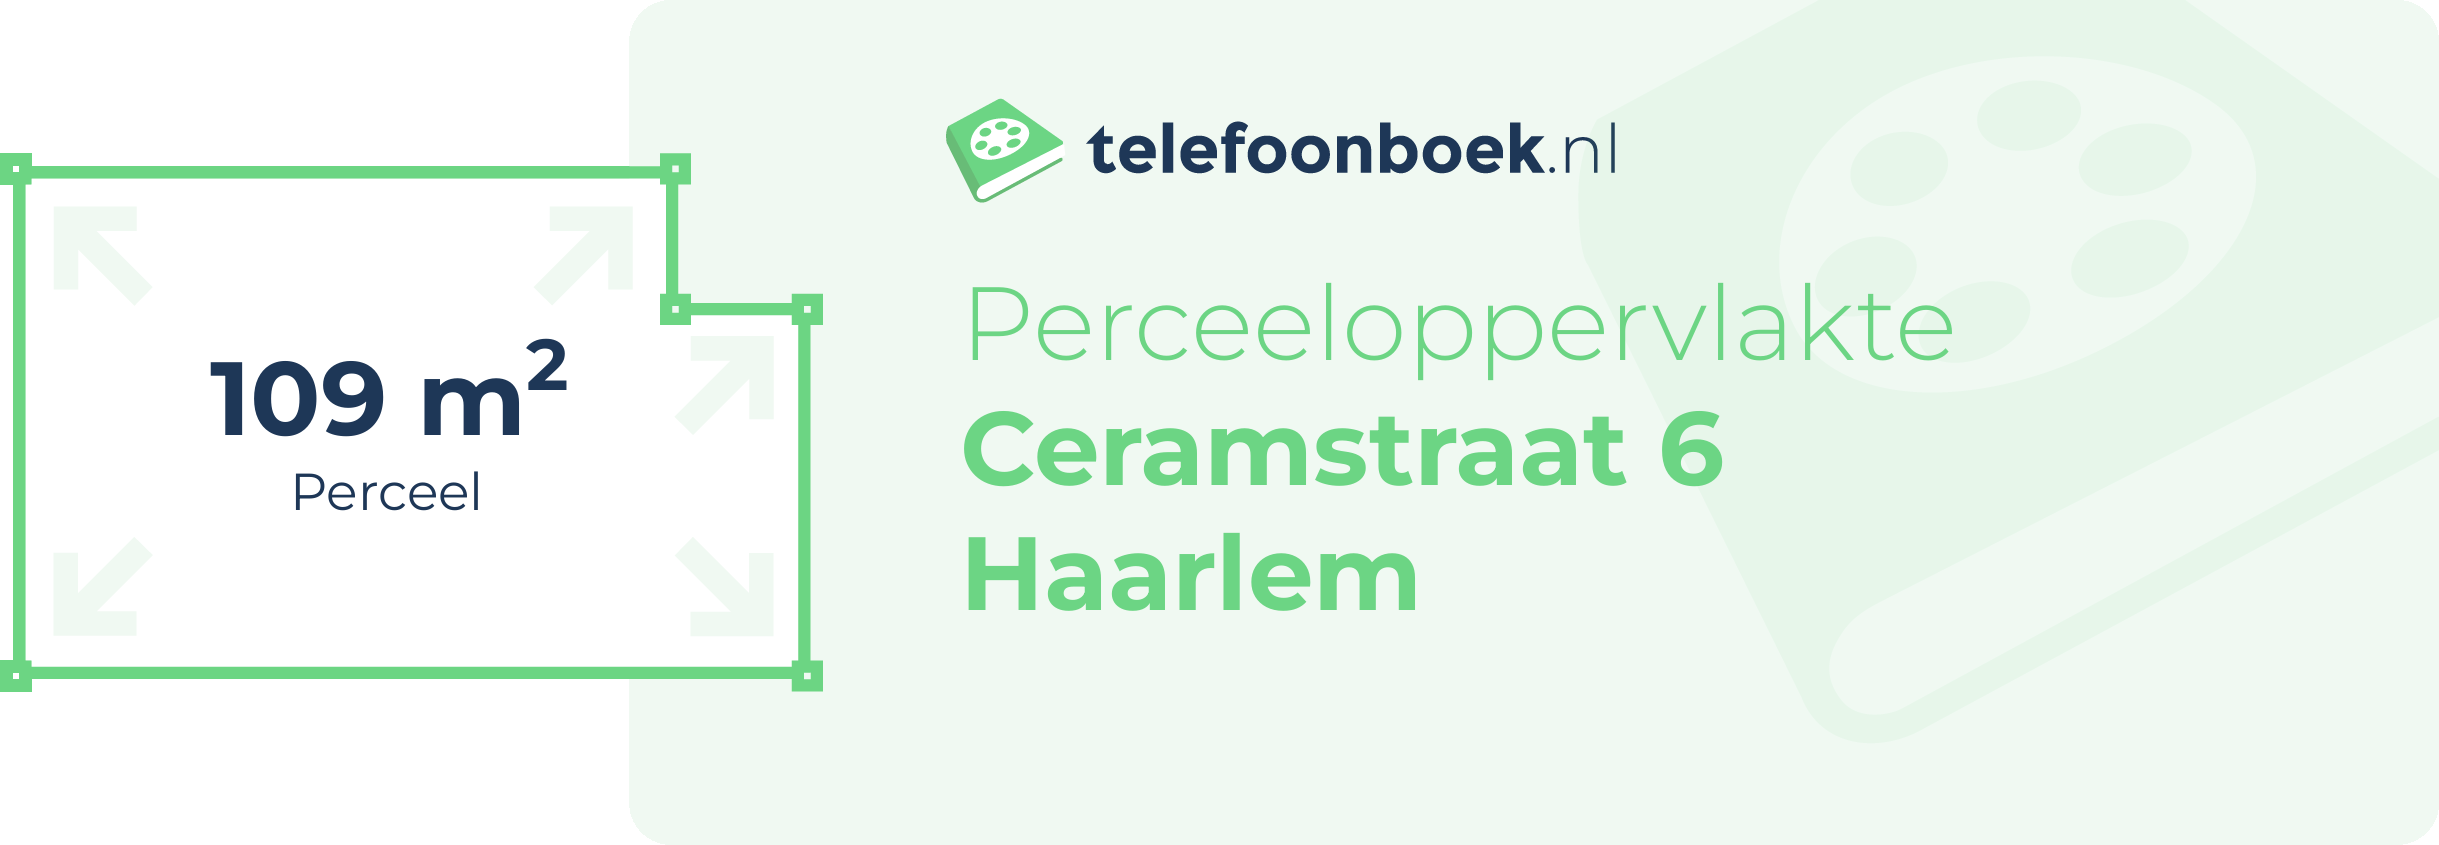 Perceeloppervlakte Ceramstraat 6 Haarlem